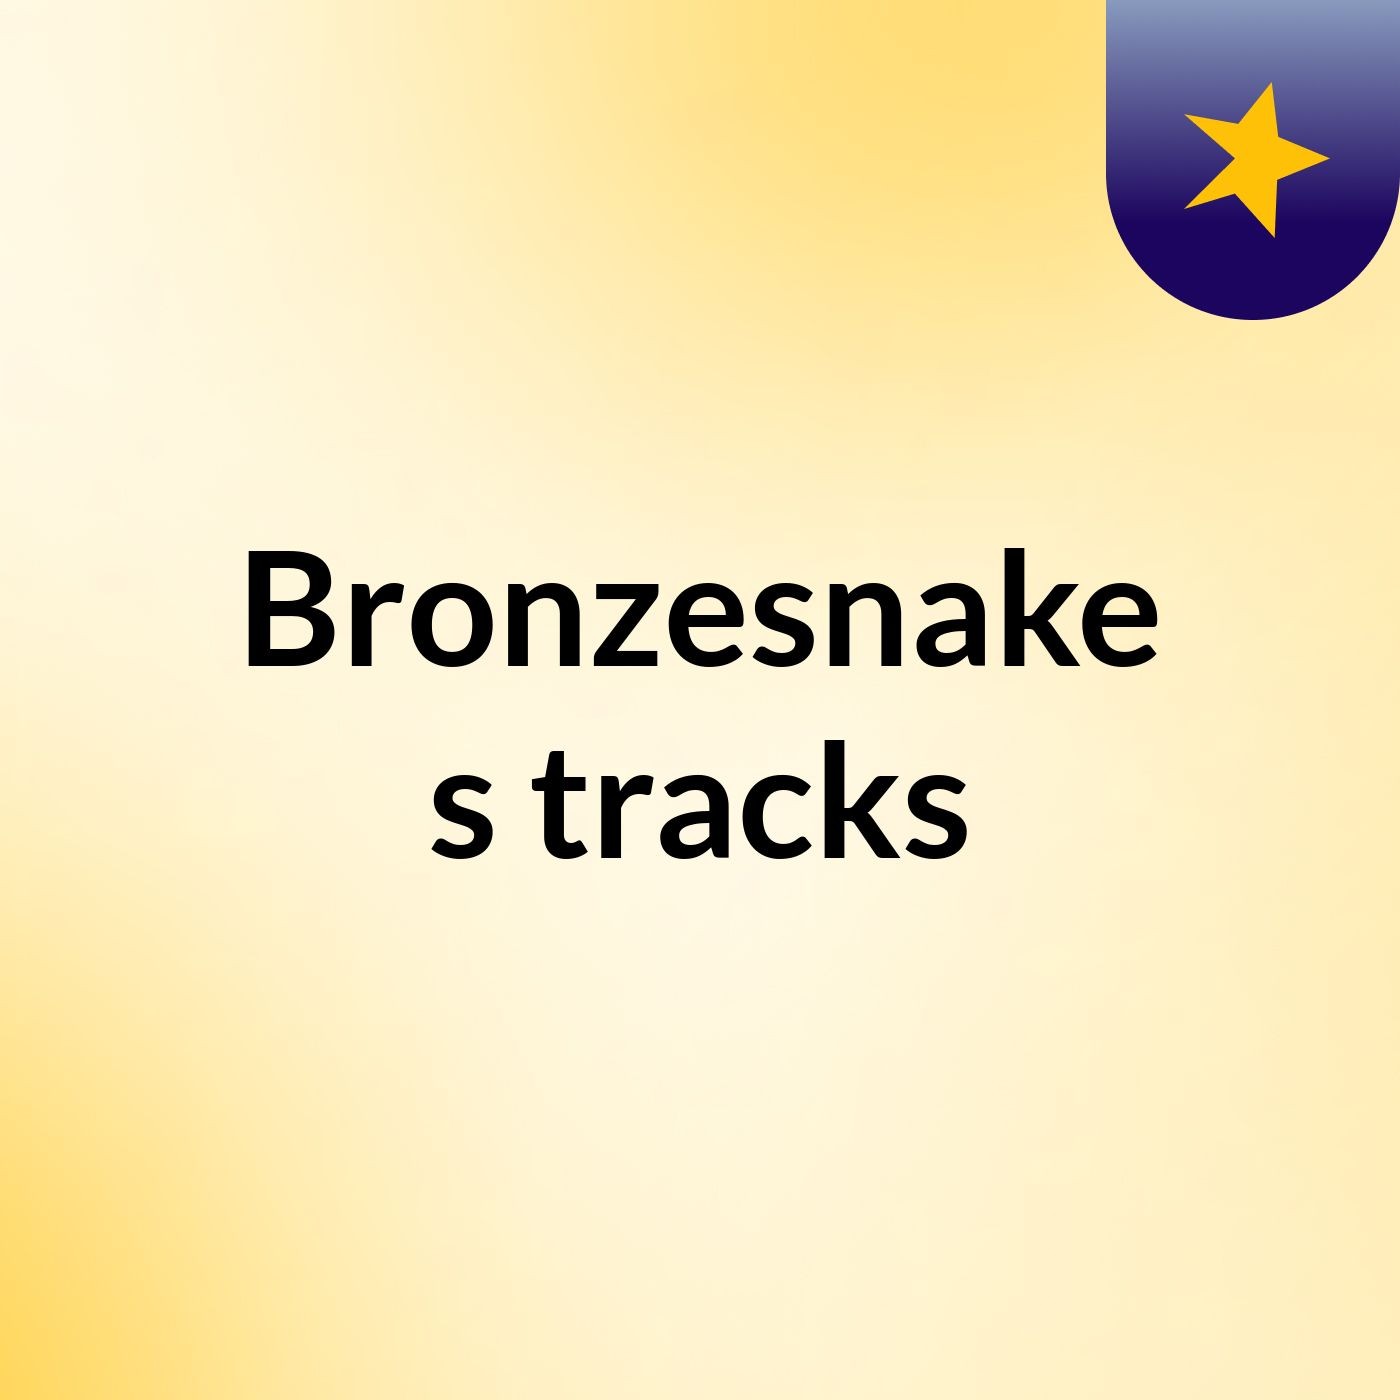 Bronzesnake's tracks